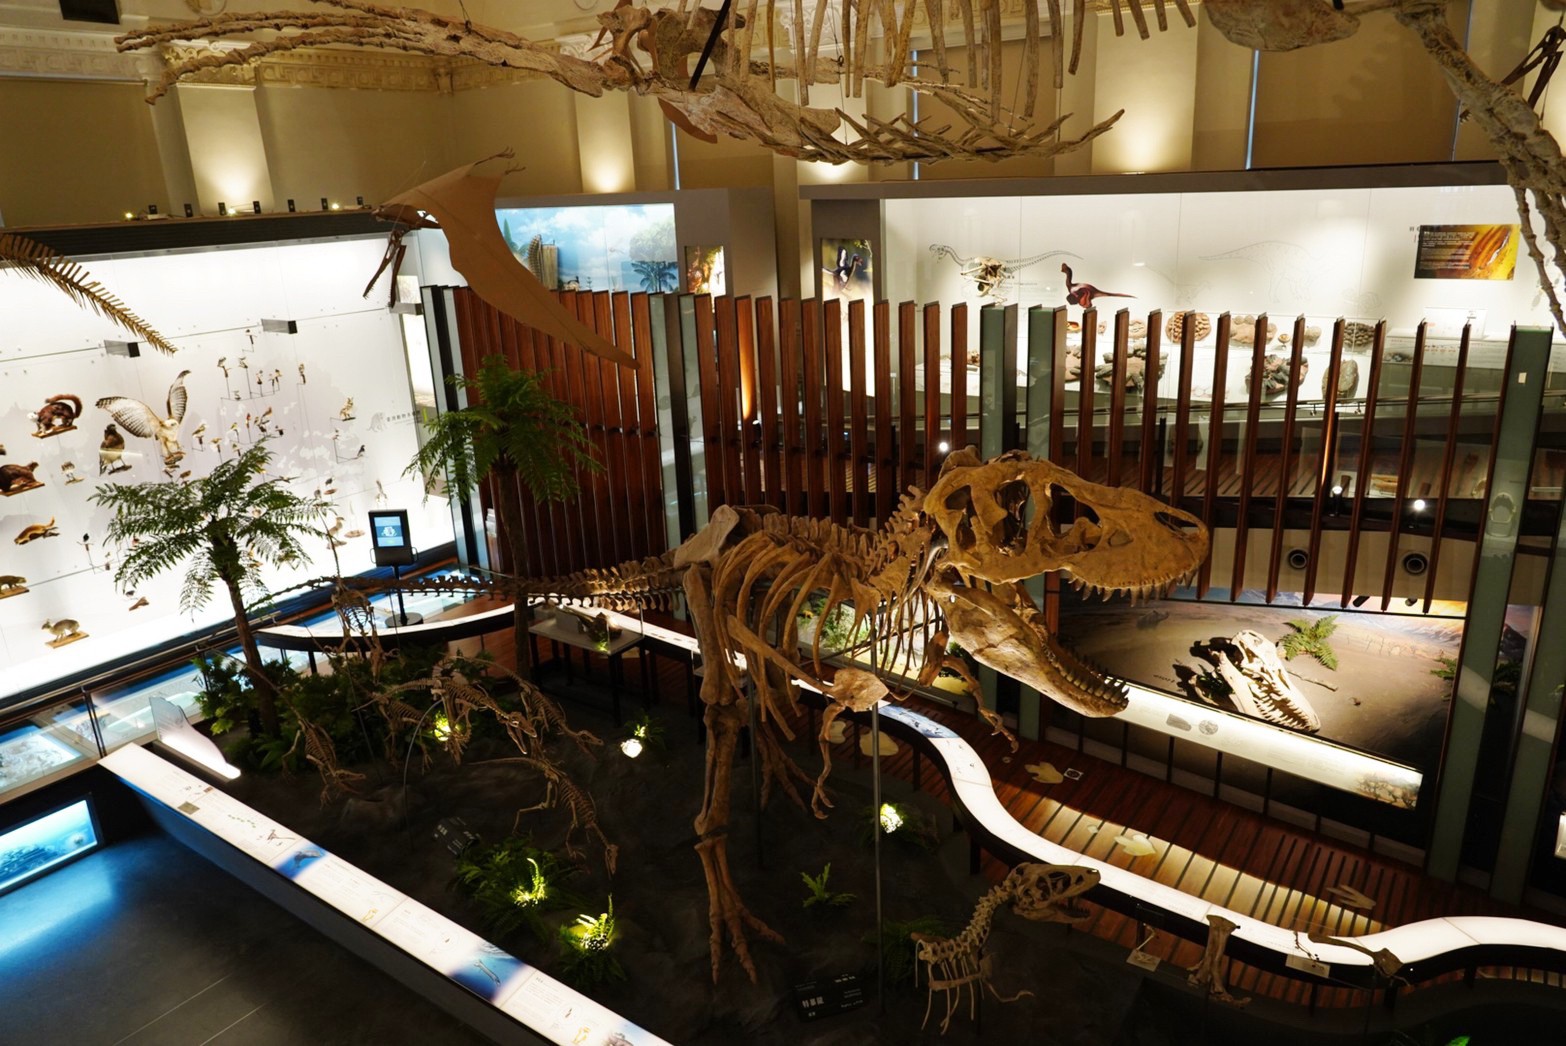 台北景點,親子景點,恐龍博物館, 土銀博物館,台灣博物館,恐龍,恐龍餐廳,228公園